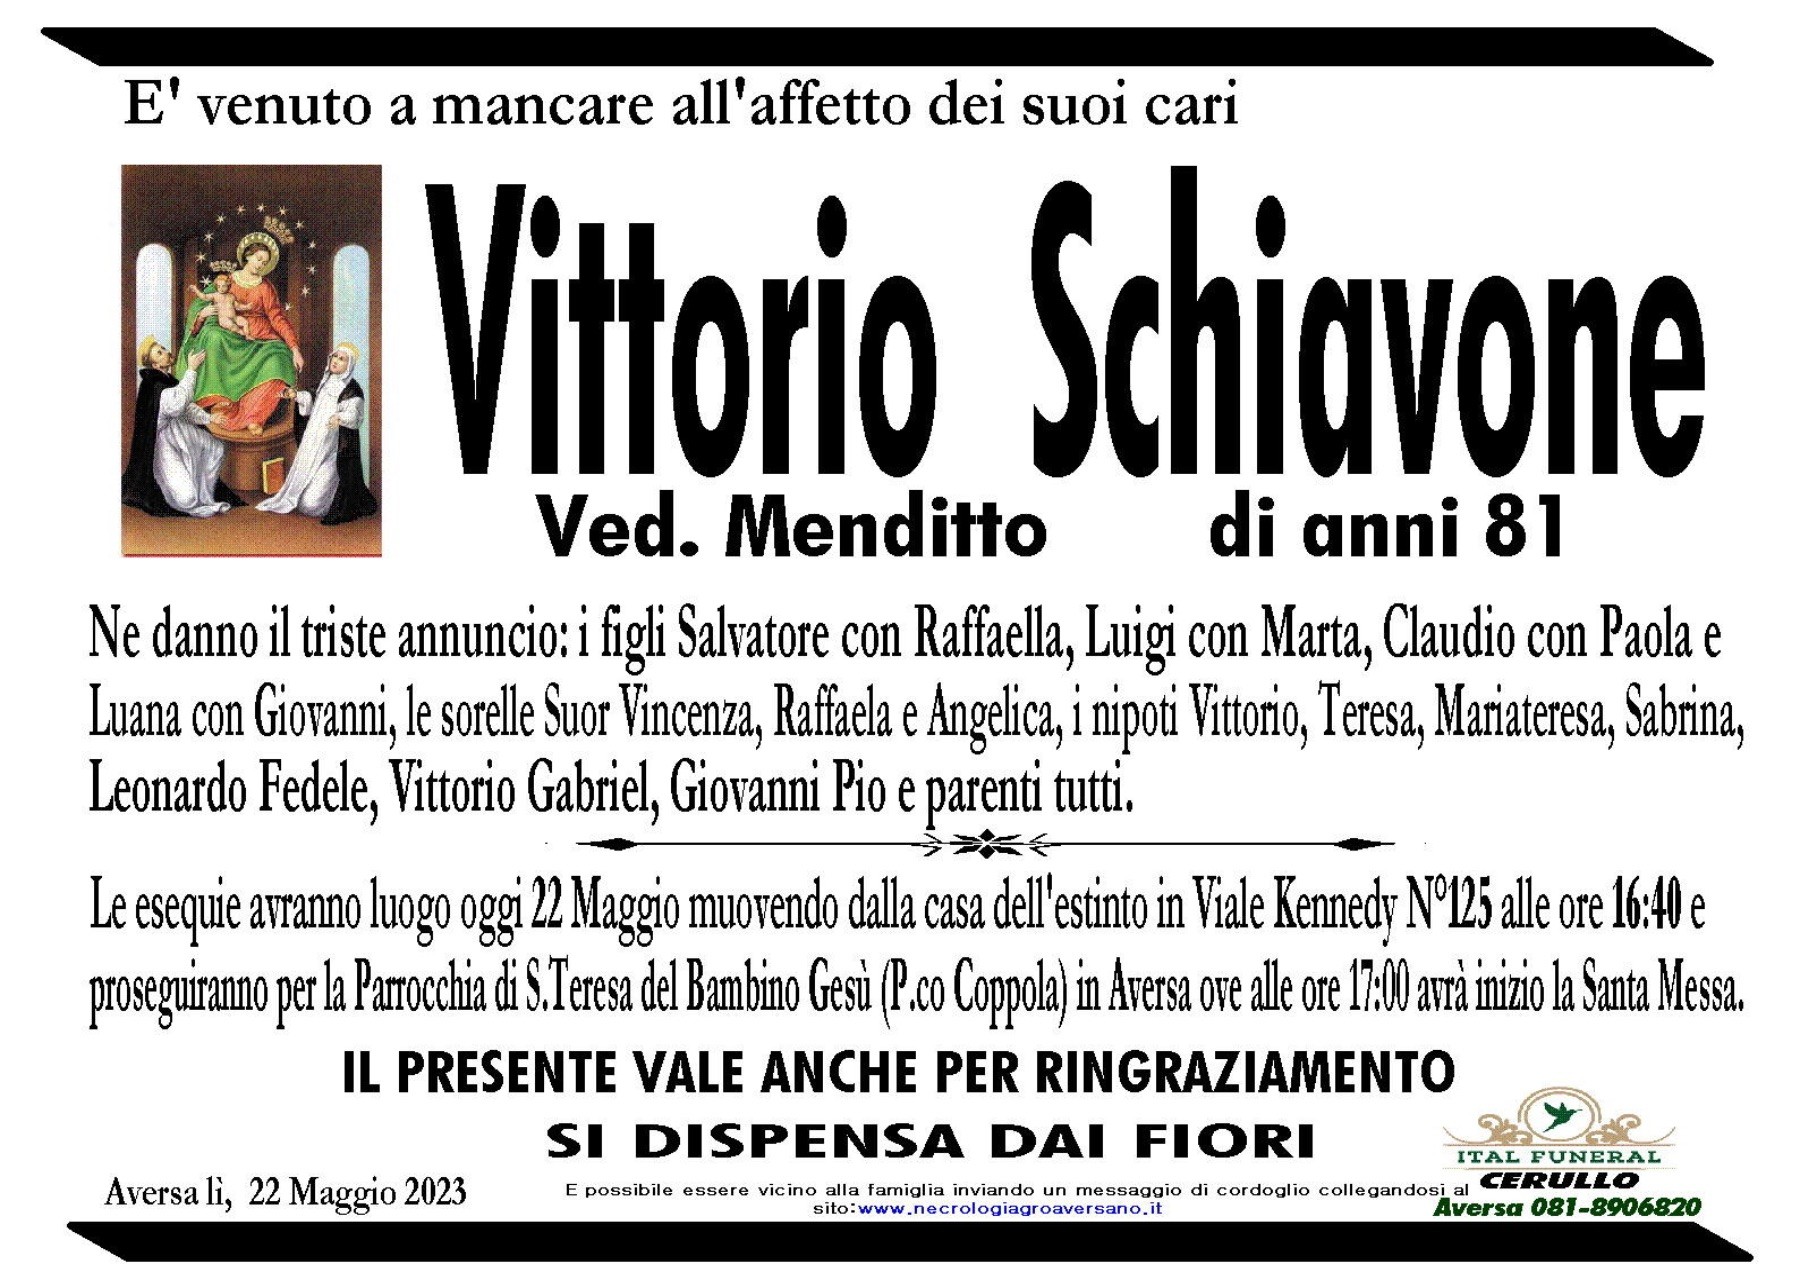 Vittorio Schiavone